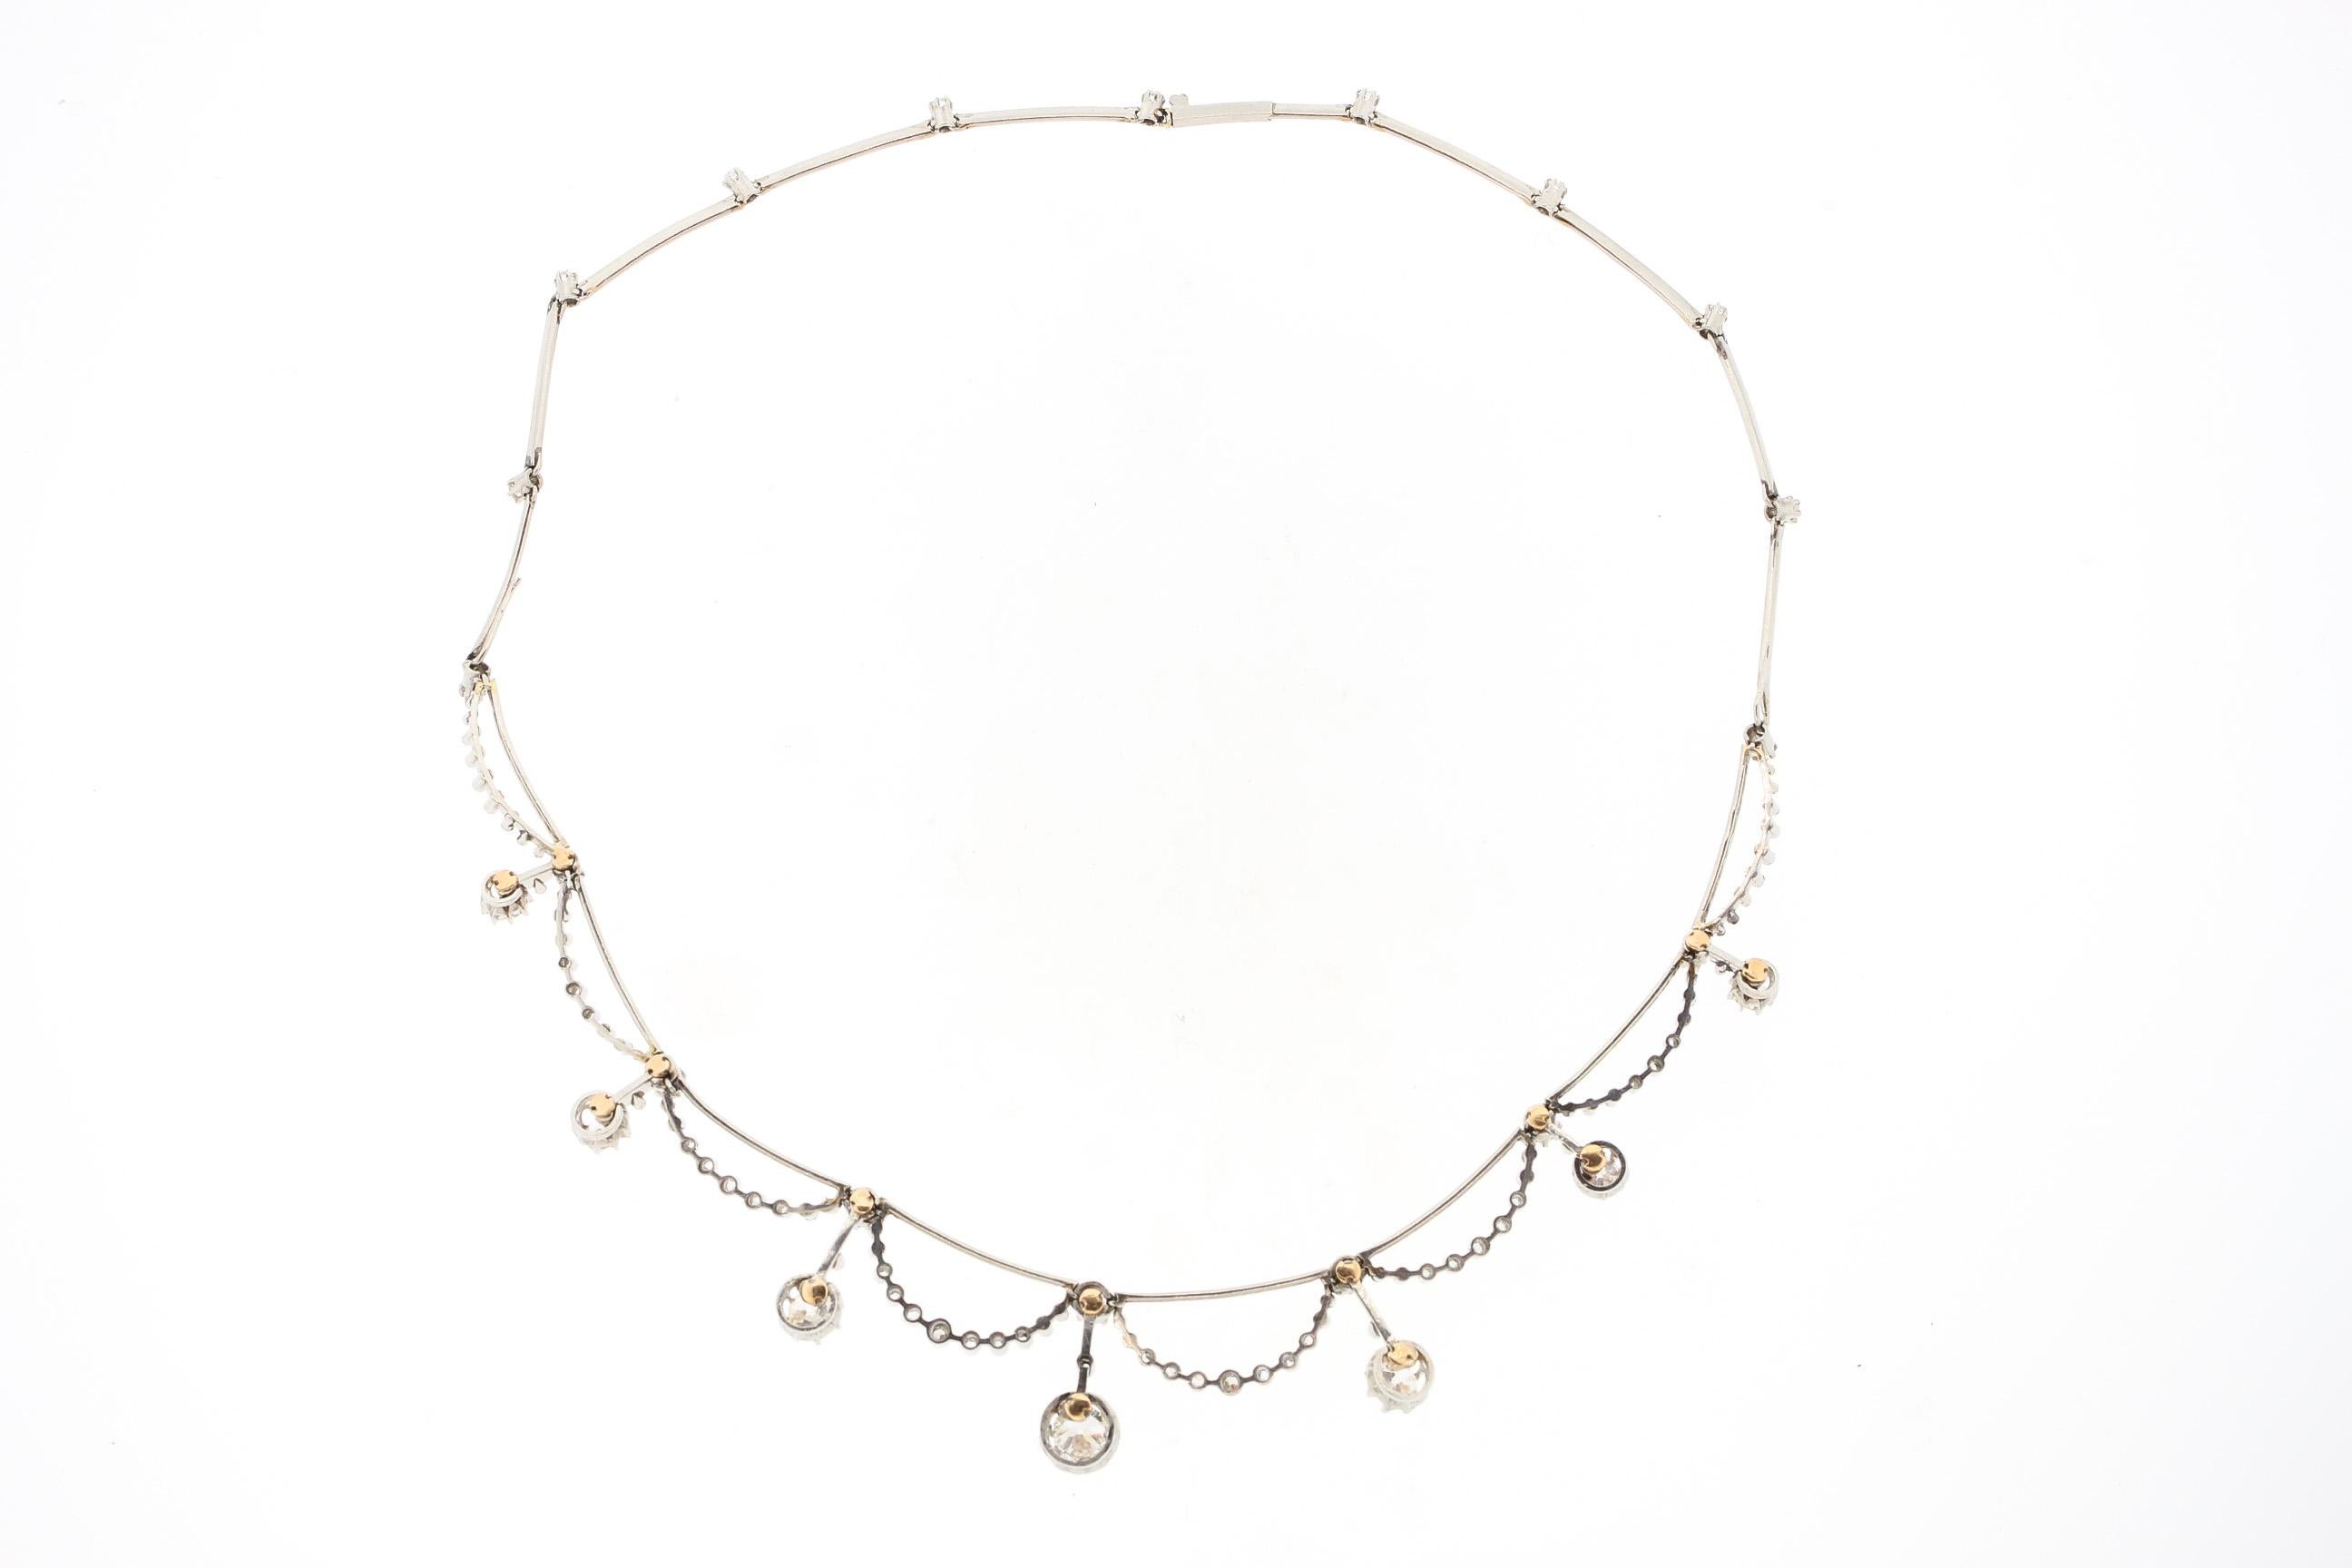 Un très joli collier ancien Belle Époque en diamants datant d'environ 1910. Ce collier a des sections de platine en forme de couteau qui suspendent des demi-lunes sécrétées de diamants et une frange de pendentifs en diamants. Le collier fait le tour